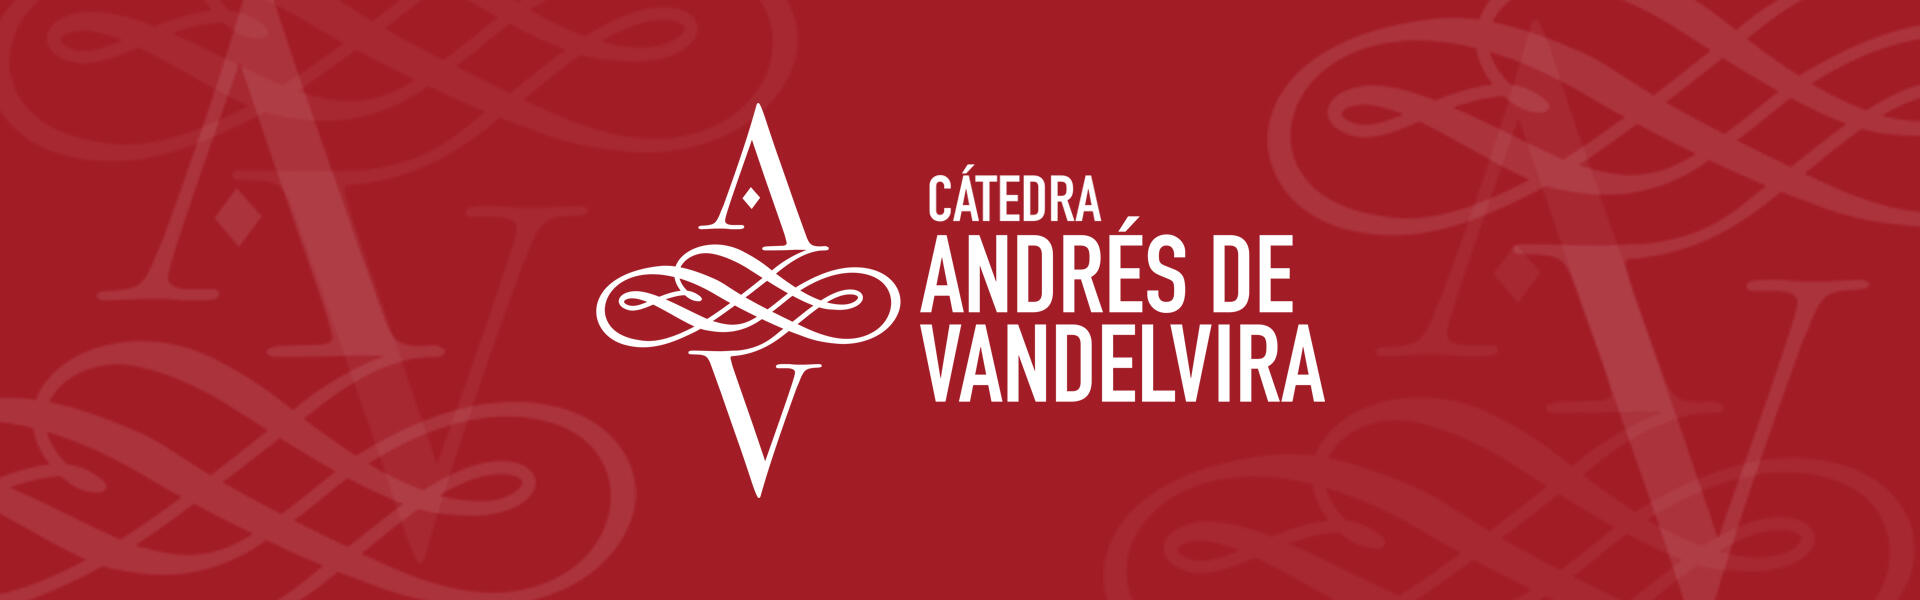 Cátedra Andrés de Vandelvira